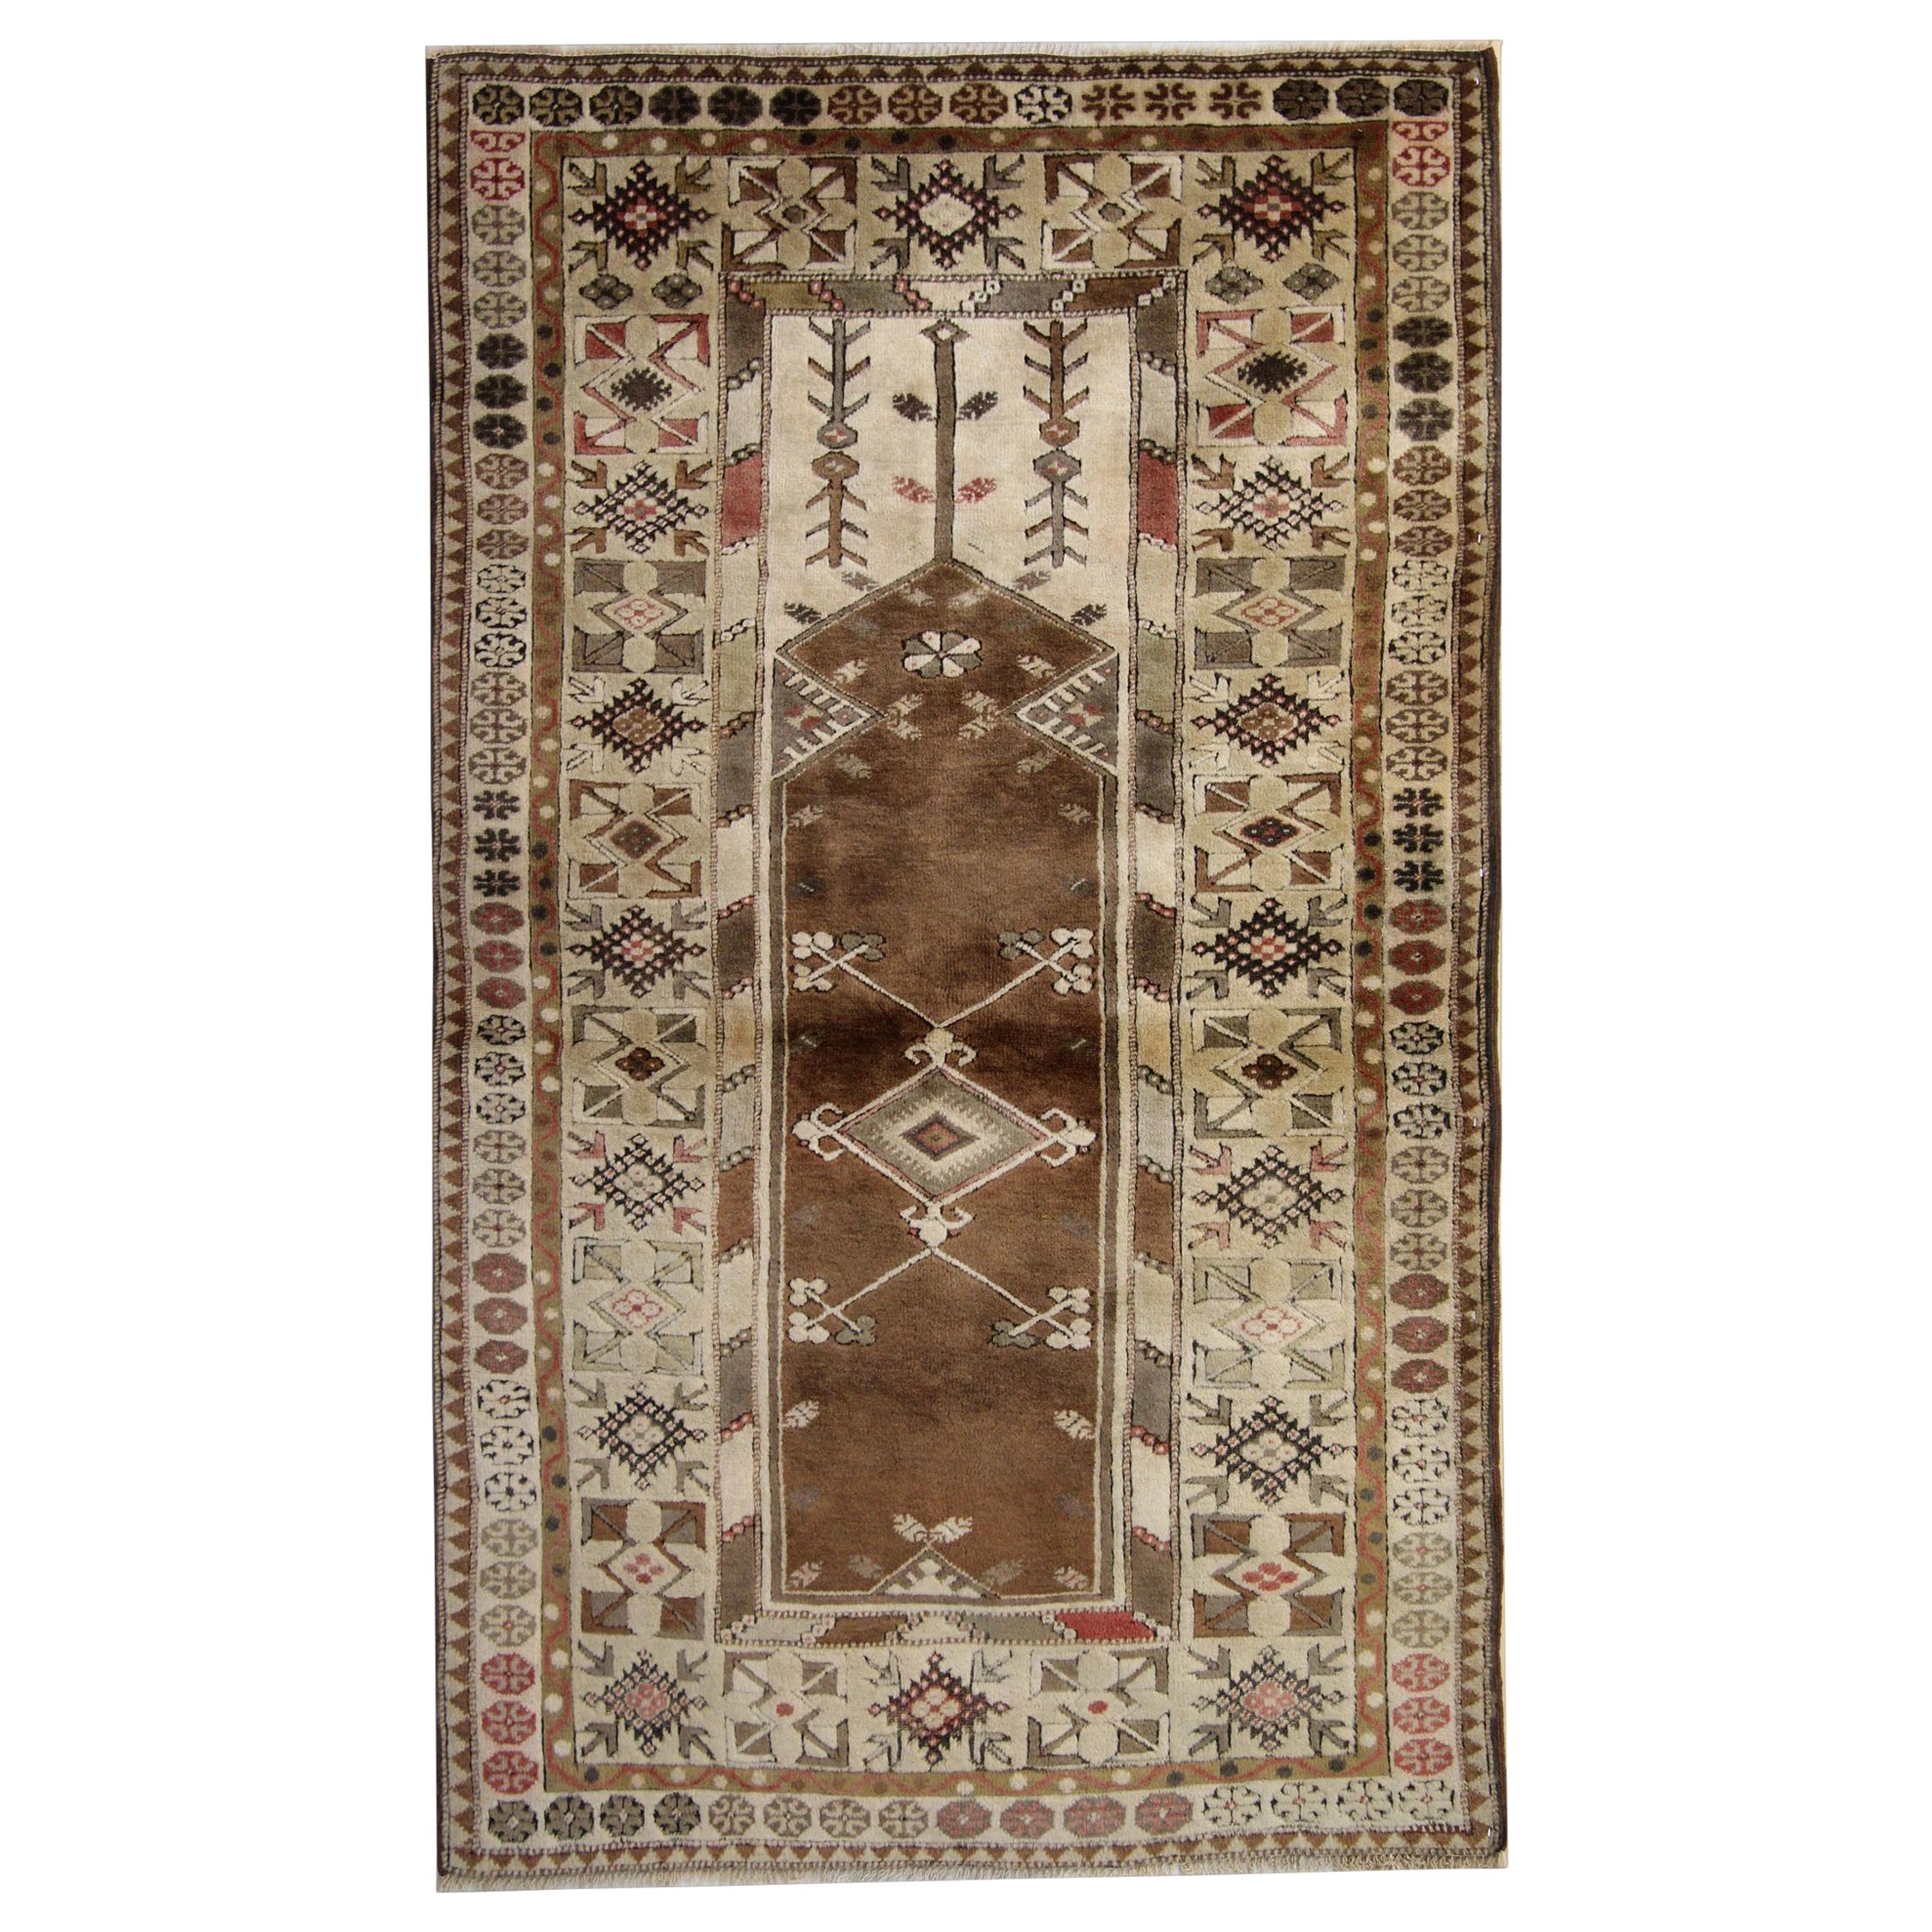 Antique Turkish Rugs, Vintage Rug Milas, Brown Rug, Handmade Carpet